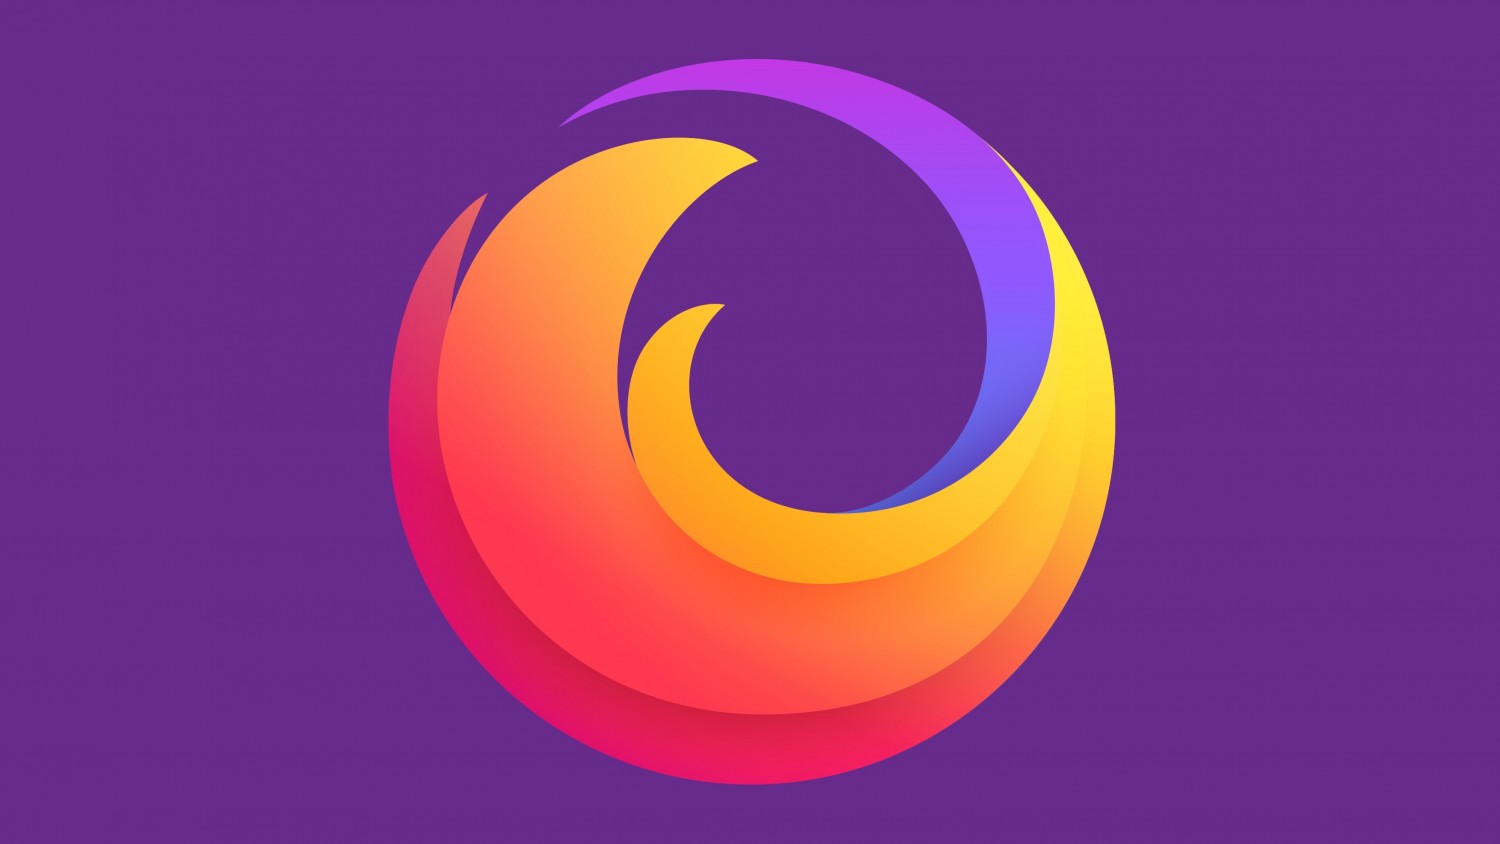 Пользователи беспокоятся, что логотип Firefox лишился лисы